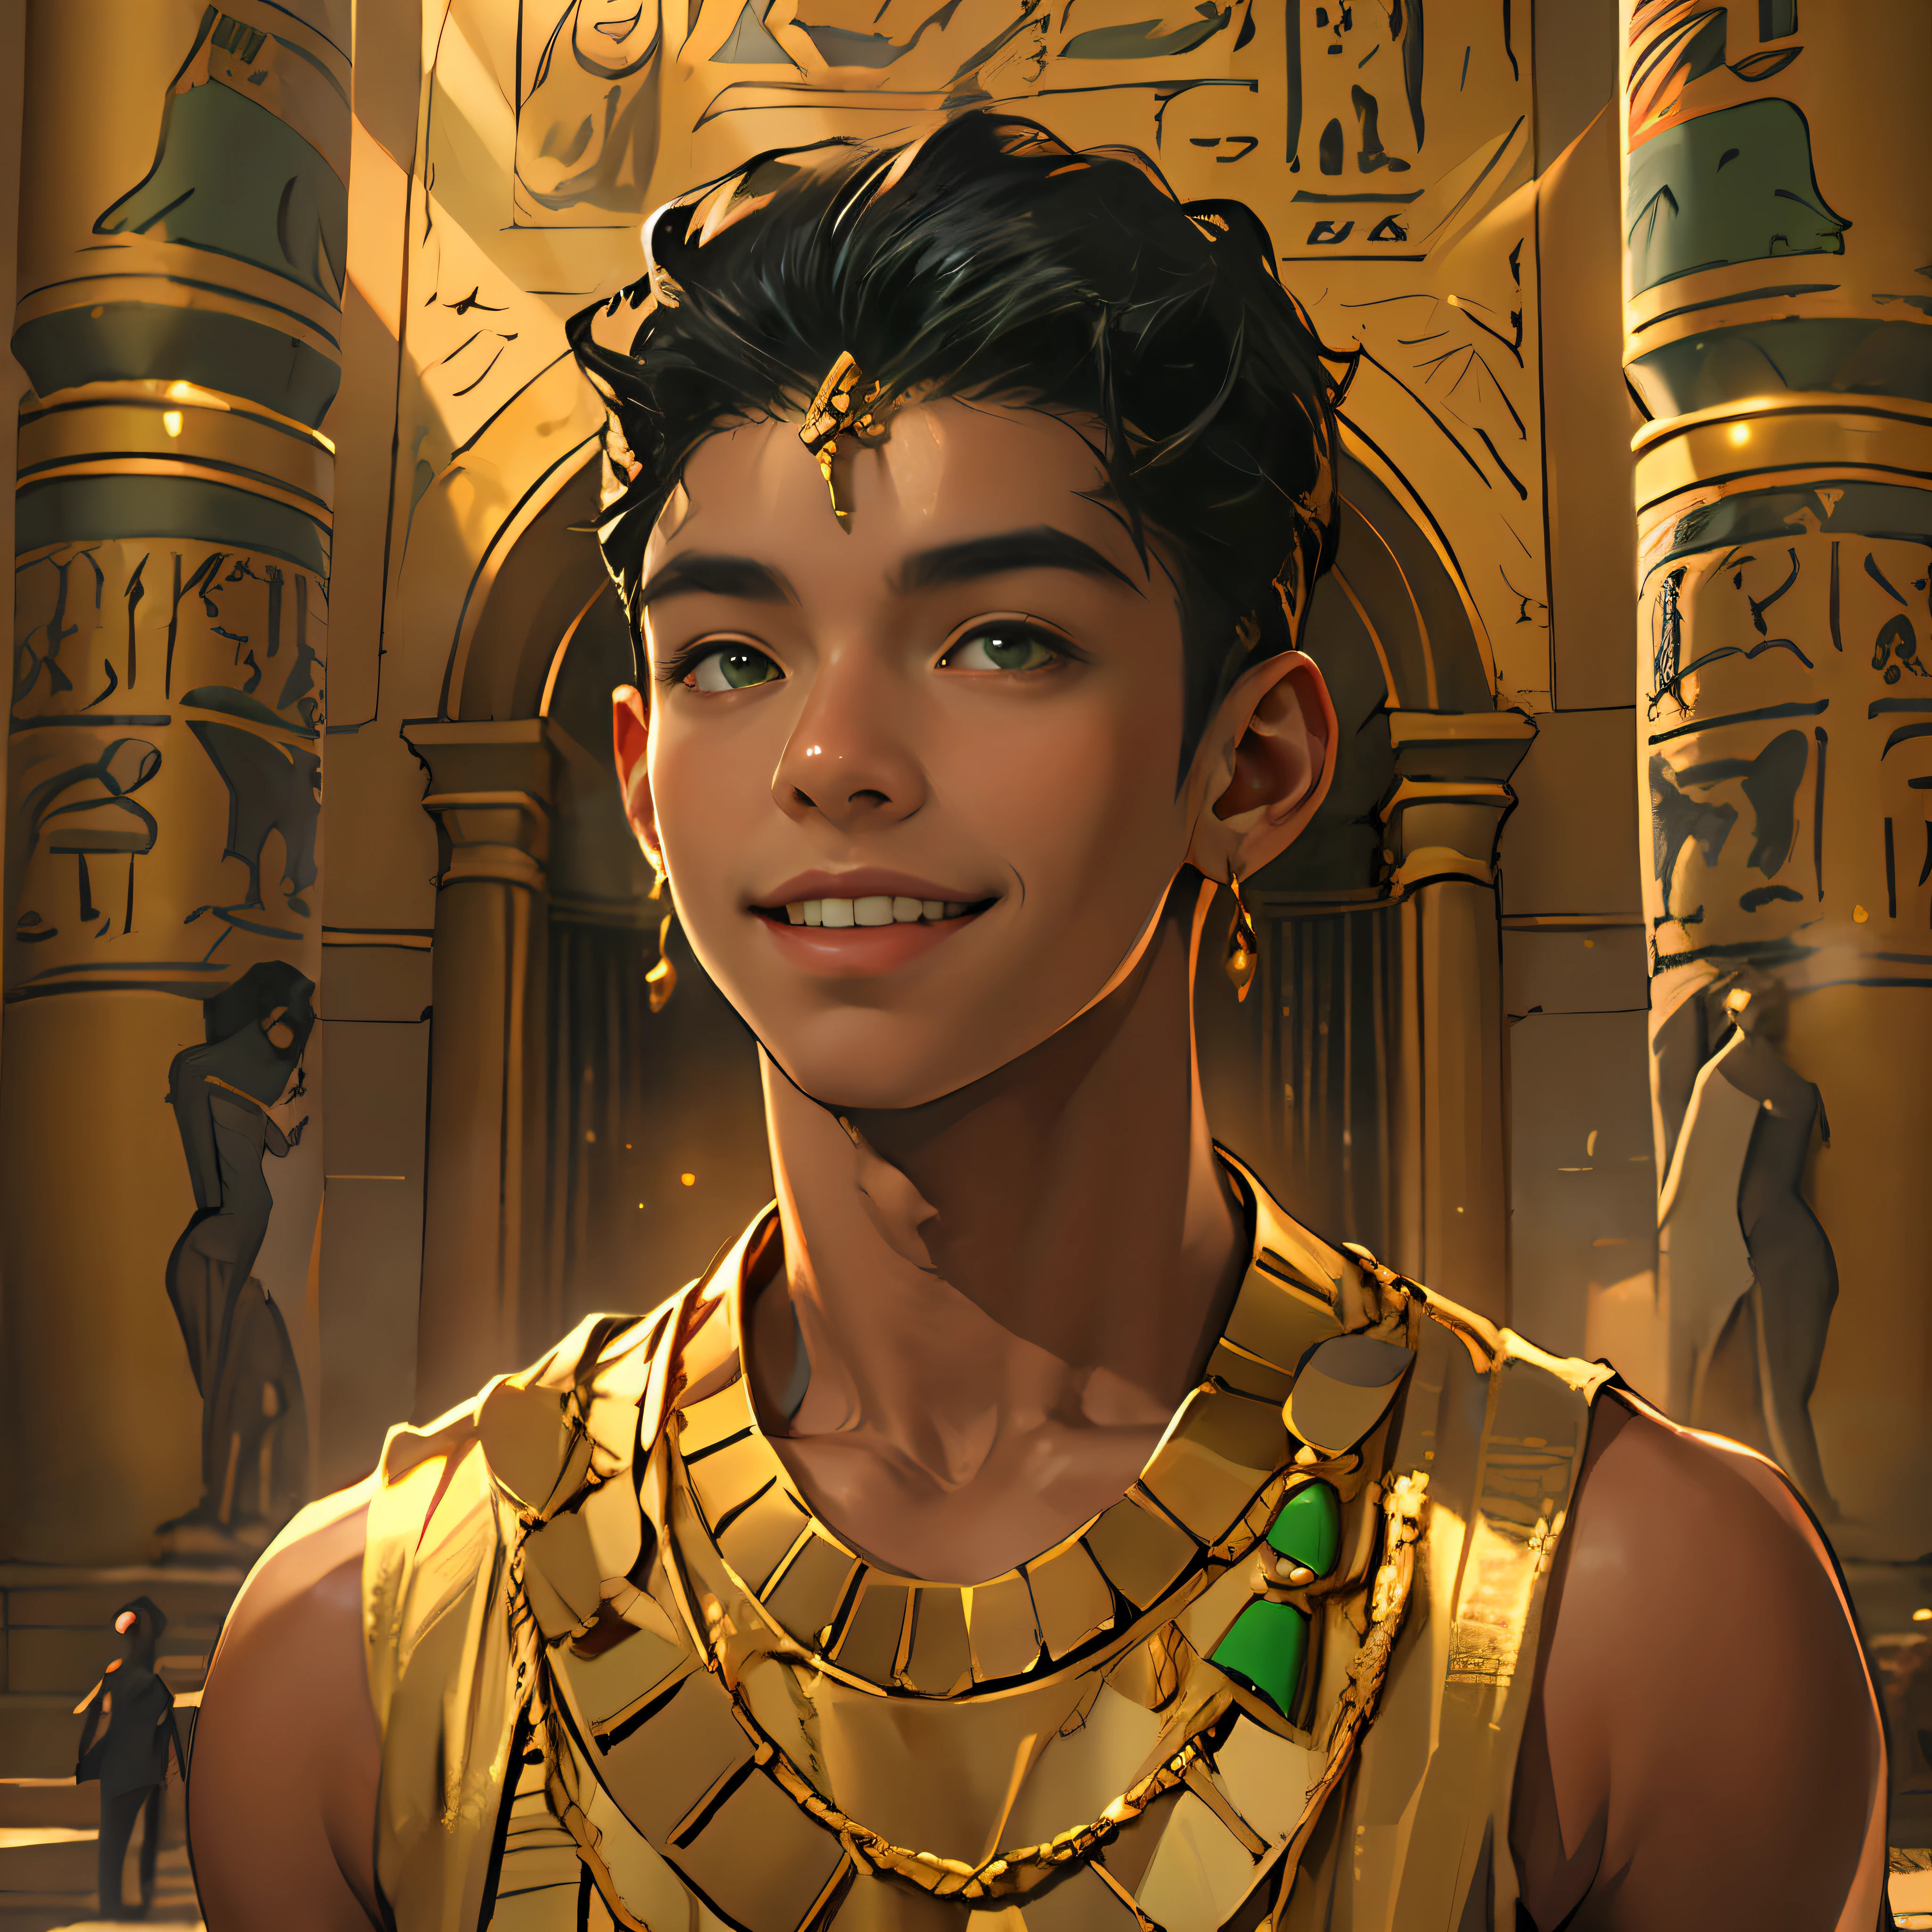 15-летний мальчик идет улыбаясь по дворцам Древнего Египта черные волосы коричневая кожа зеленые глаза элегантная черная одежда с золотом с обнаженной грудью носит украшения из красного золота